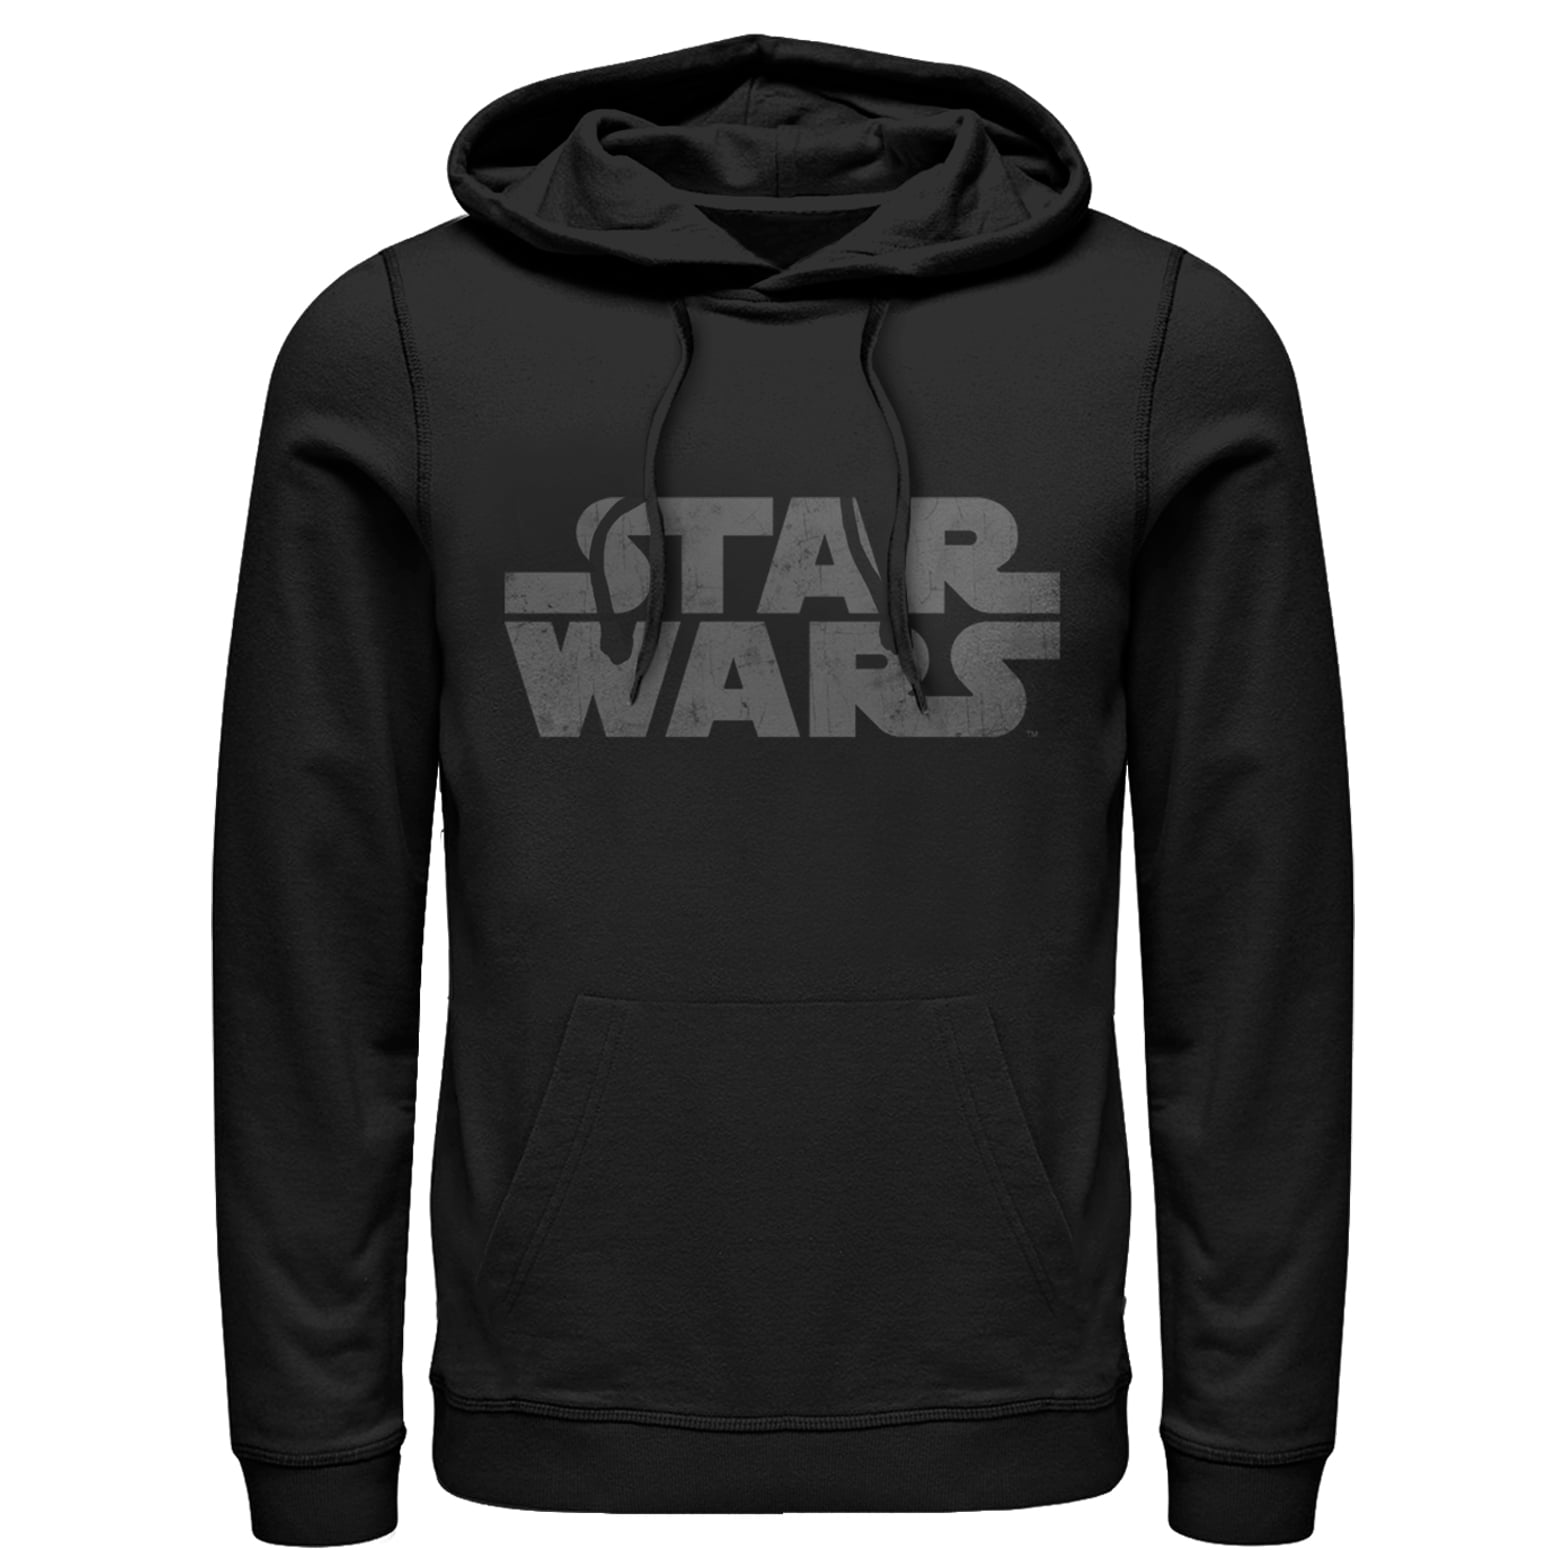 star wars zip up hoodie